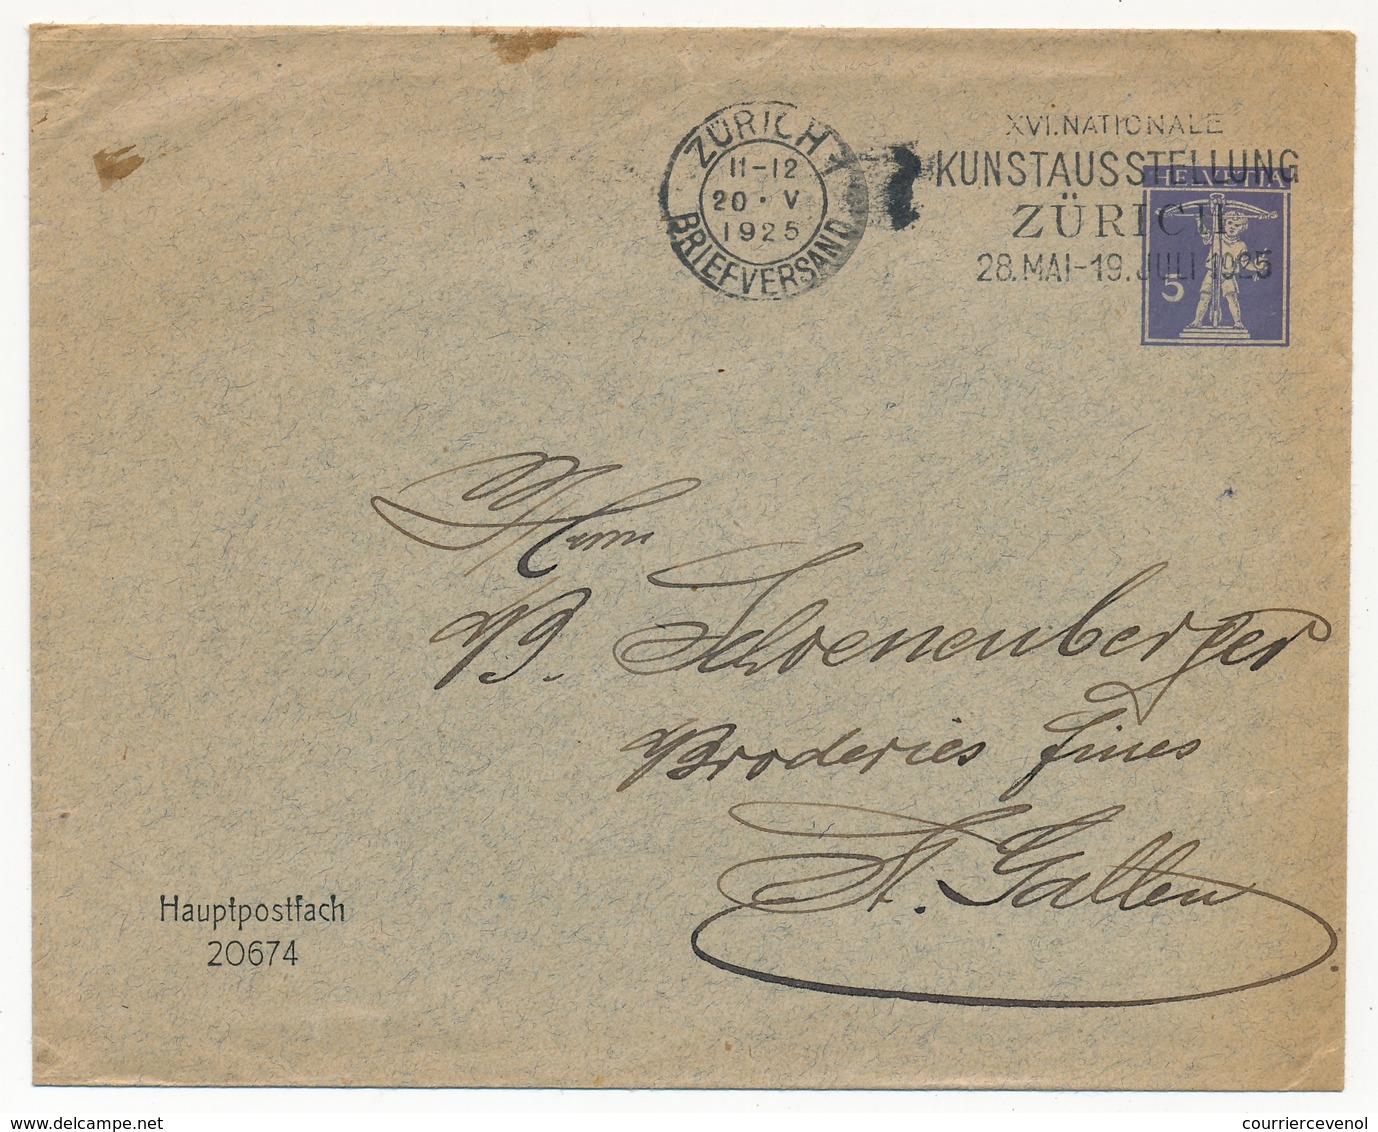 SUISSE - Entier Postal Enveloppe 5c - Mention Imprimée "Hauptpostfach 20674" - Zürich 1925 - Postwaardestukken